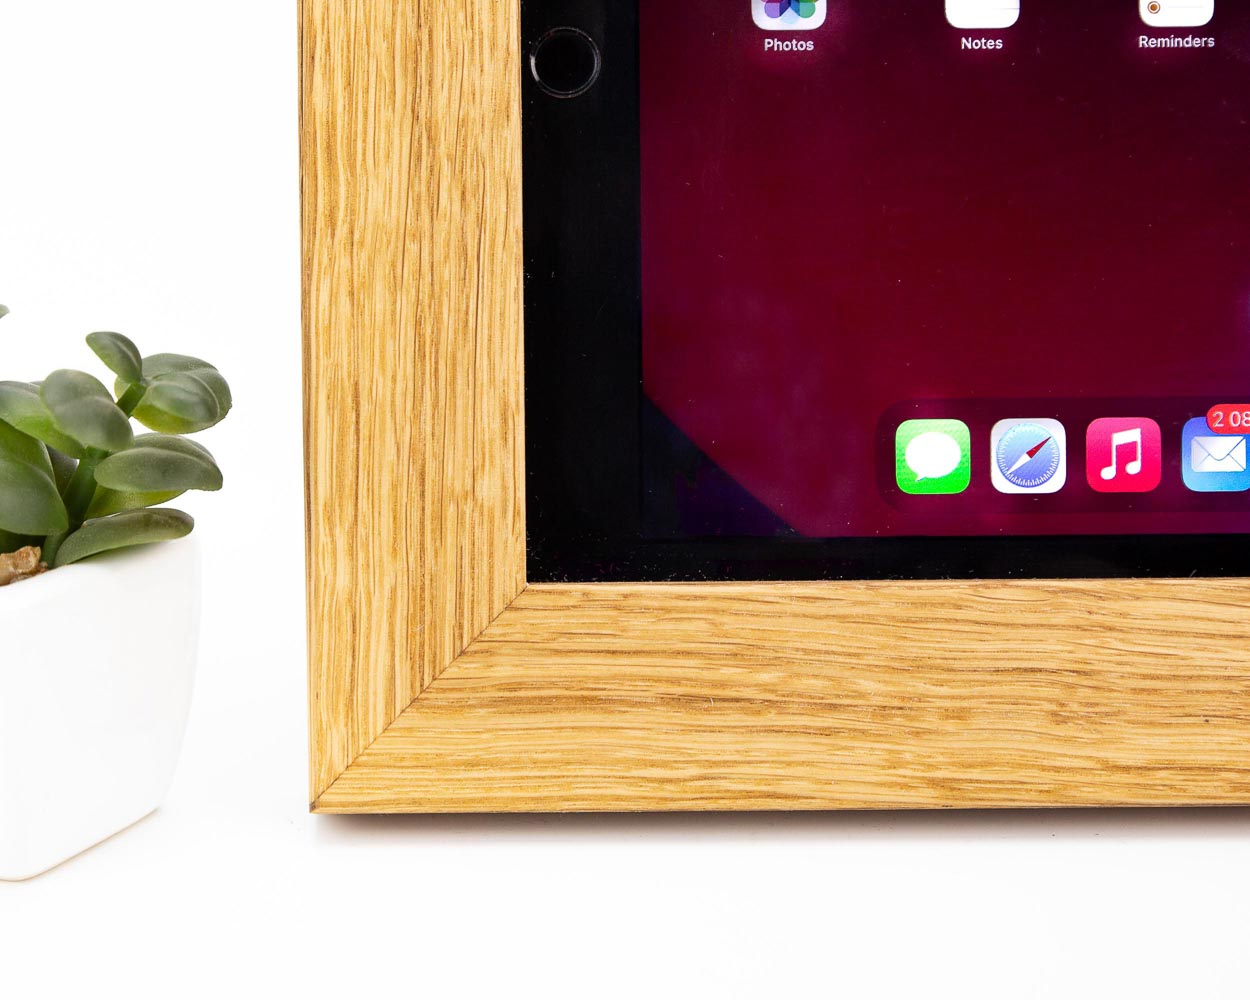 Natural Oak Frame for iPad